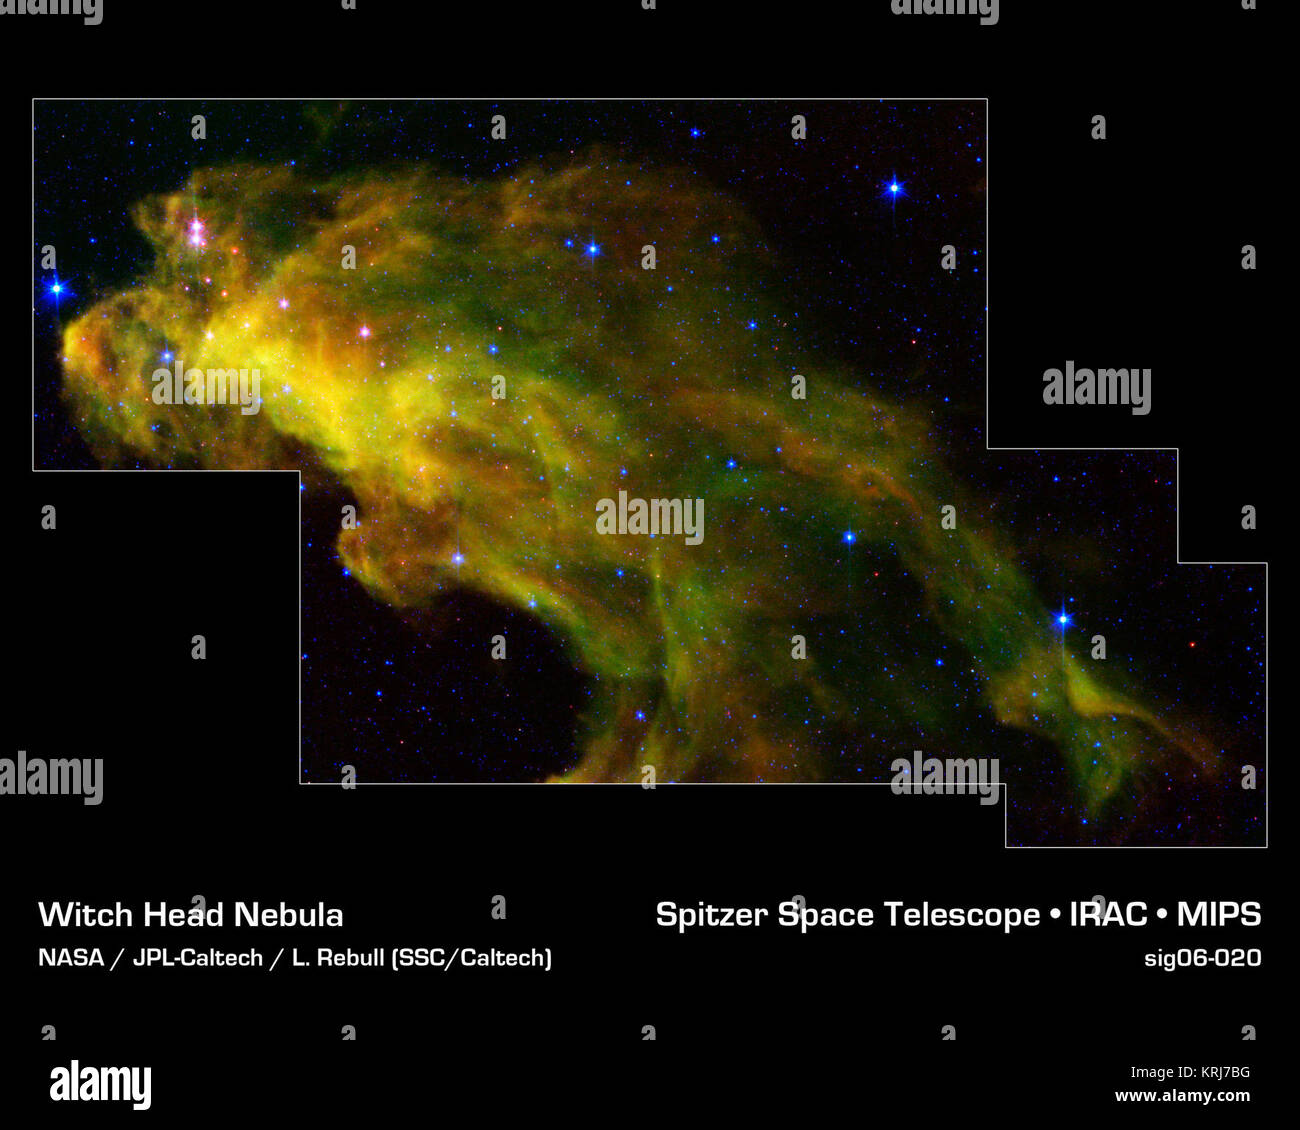 Otto centinaia di anni luce di distanza nella costellazione di Orione, una gigantesca nube oscura denominata "Strega testa' nebulosa è la produzione di birra baby stelle. La stellar neonati sono rivelati come punti rosa in questa immagine dalla NASA il telescopio spaziale Spitzer. I ciuffi di verde nel cloud sono ricchi in carbonio chiamato molecole di idrocarburi policiclici aromatici, i quali si trovano in area barbecue e nei gas di scarico delle automobili sulla terra. Questa immagine è stata ottenuta come parte del telescopio spaziale Spitzer Programma di ricerca per gli insegnanti e per gli studenti, con la partecipazione di alta scuola gli insegnanti e i loro studenti provenienti da tutti gli Stati Uniti. Il infrar Foto Stock